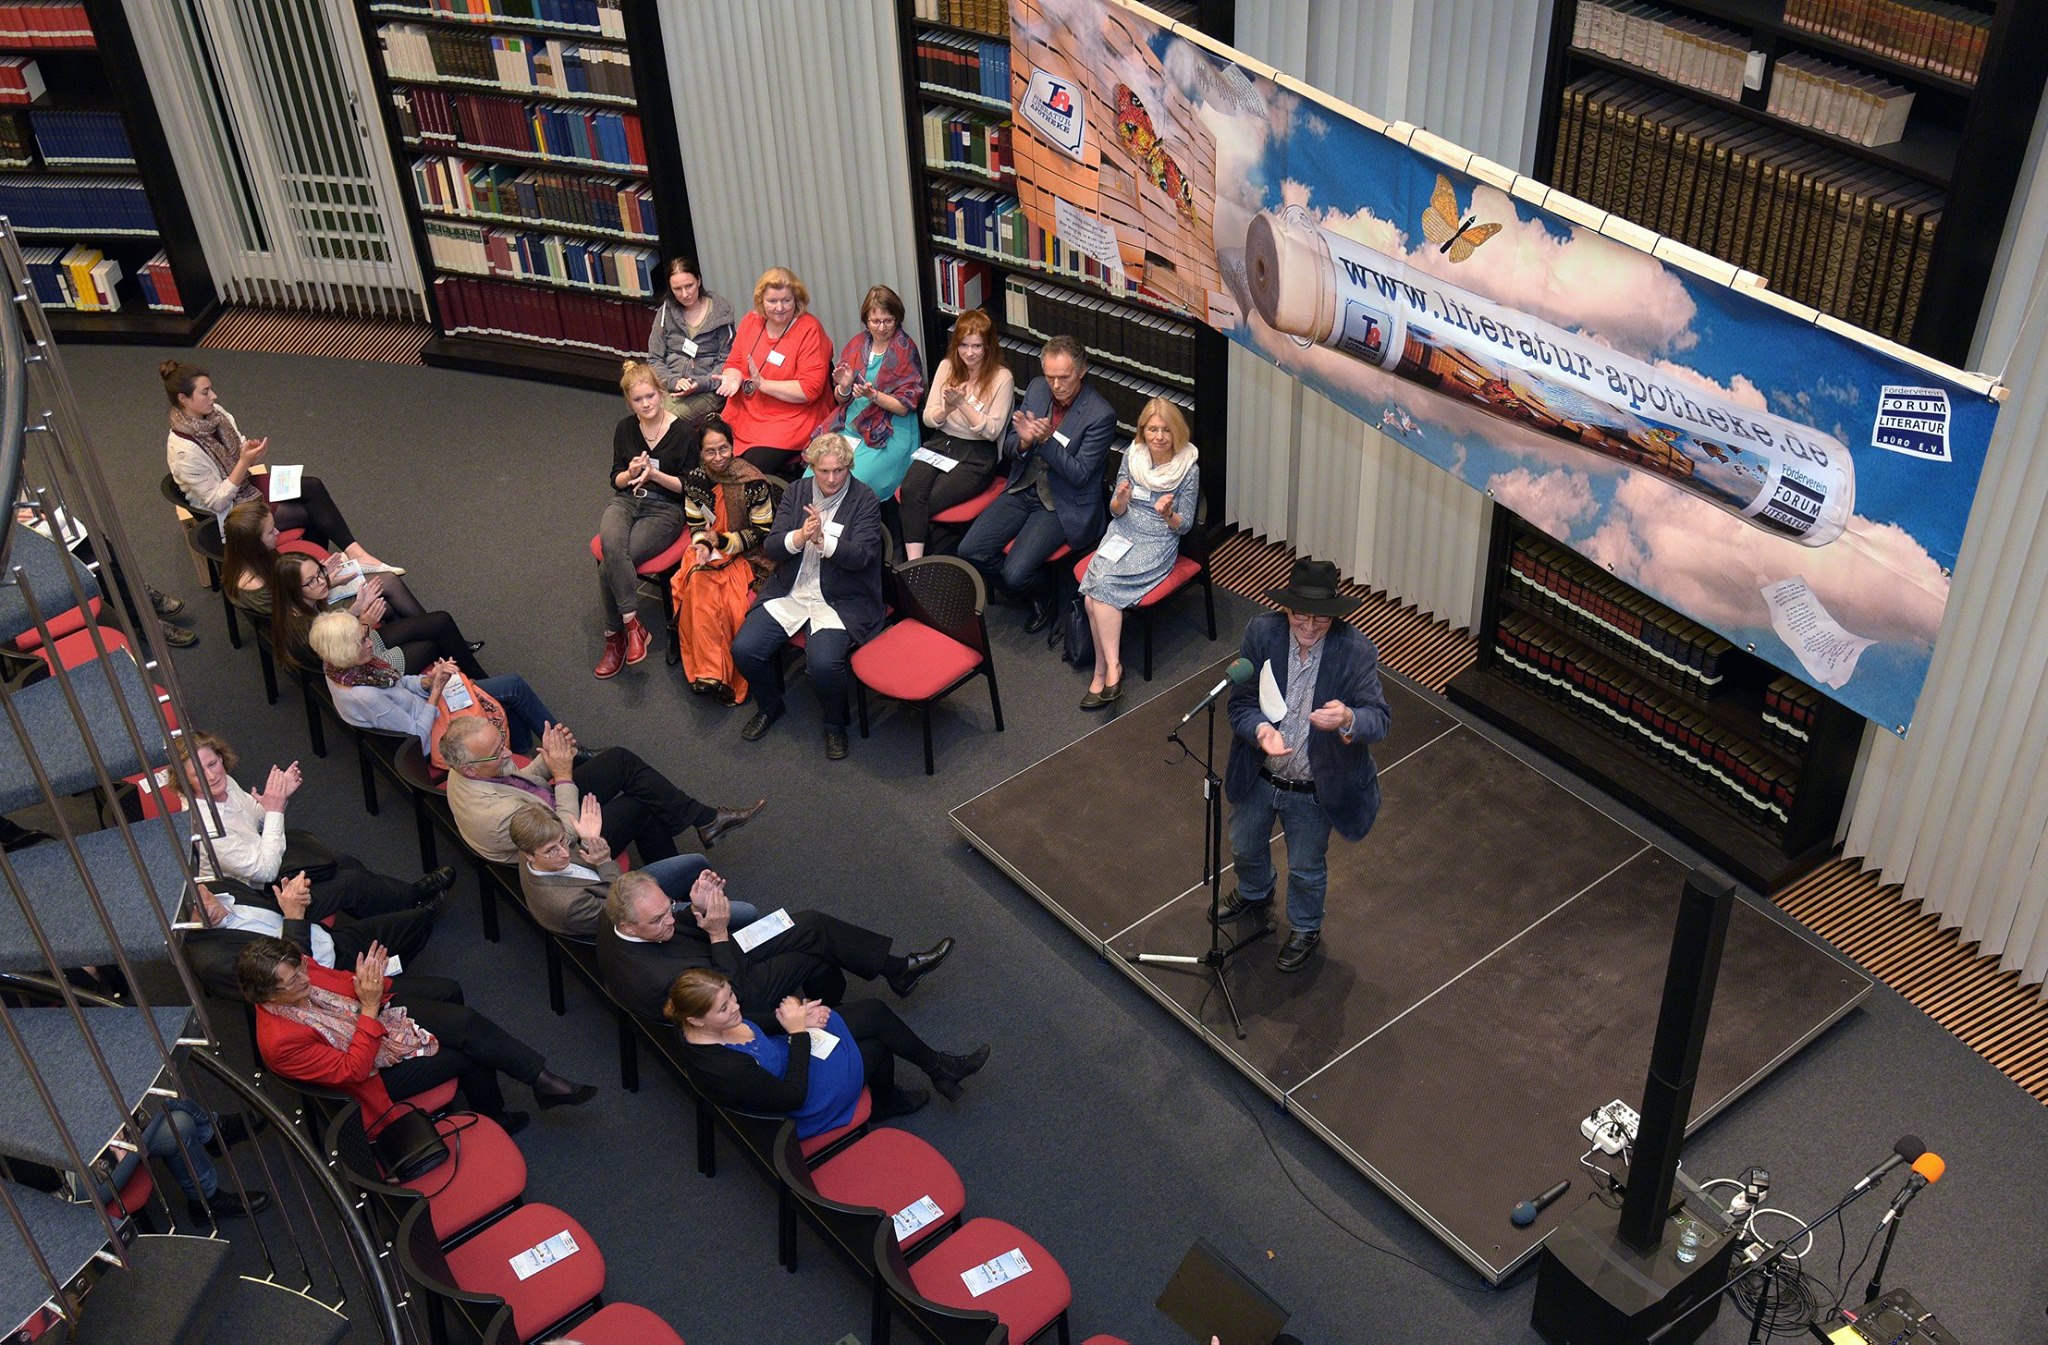 Jo Köhler steht bei einer Veranstaltung im Rahmen der Literatur-Apotheke in einer Bibliothek auf der Bühne, das Publikum applaudiert